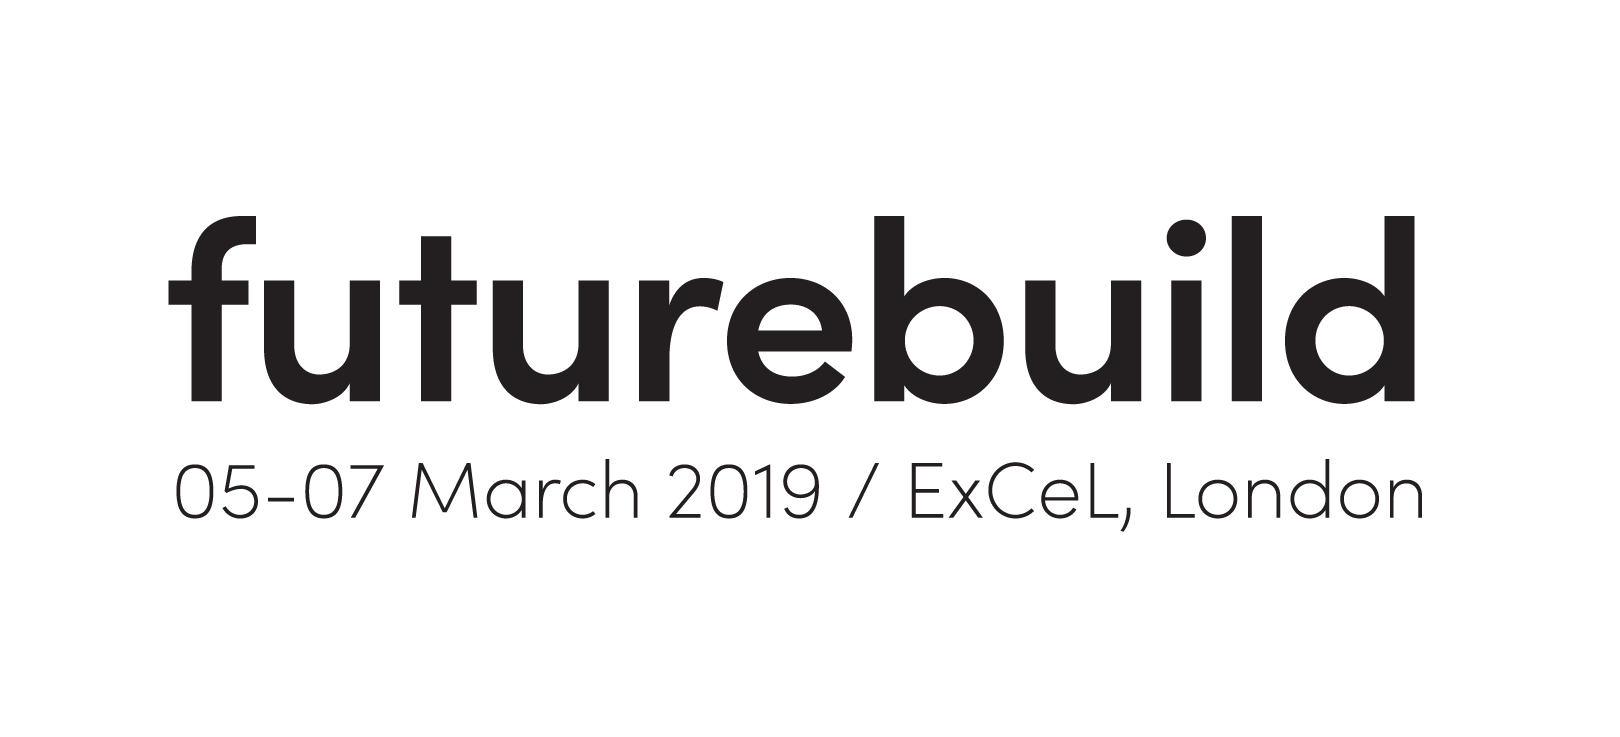 FUTUREBUILD, Londra, 5-7 marzo 2019.  Fiera dedicata all'edilizia sostenibile, energie rinnovabili ed efficienza energetica.